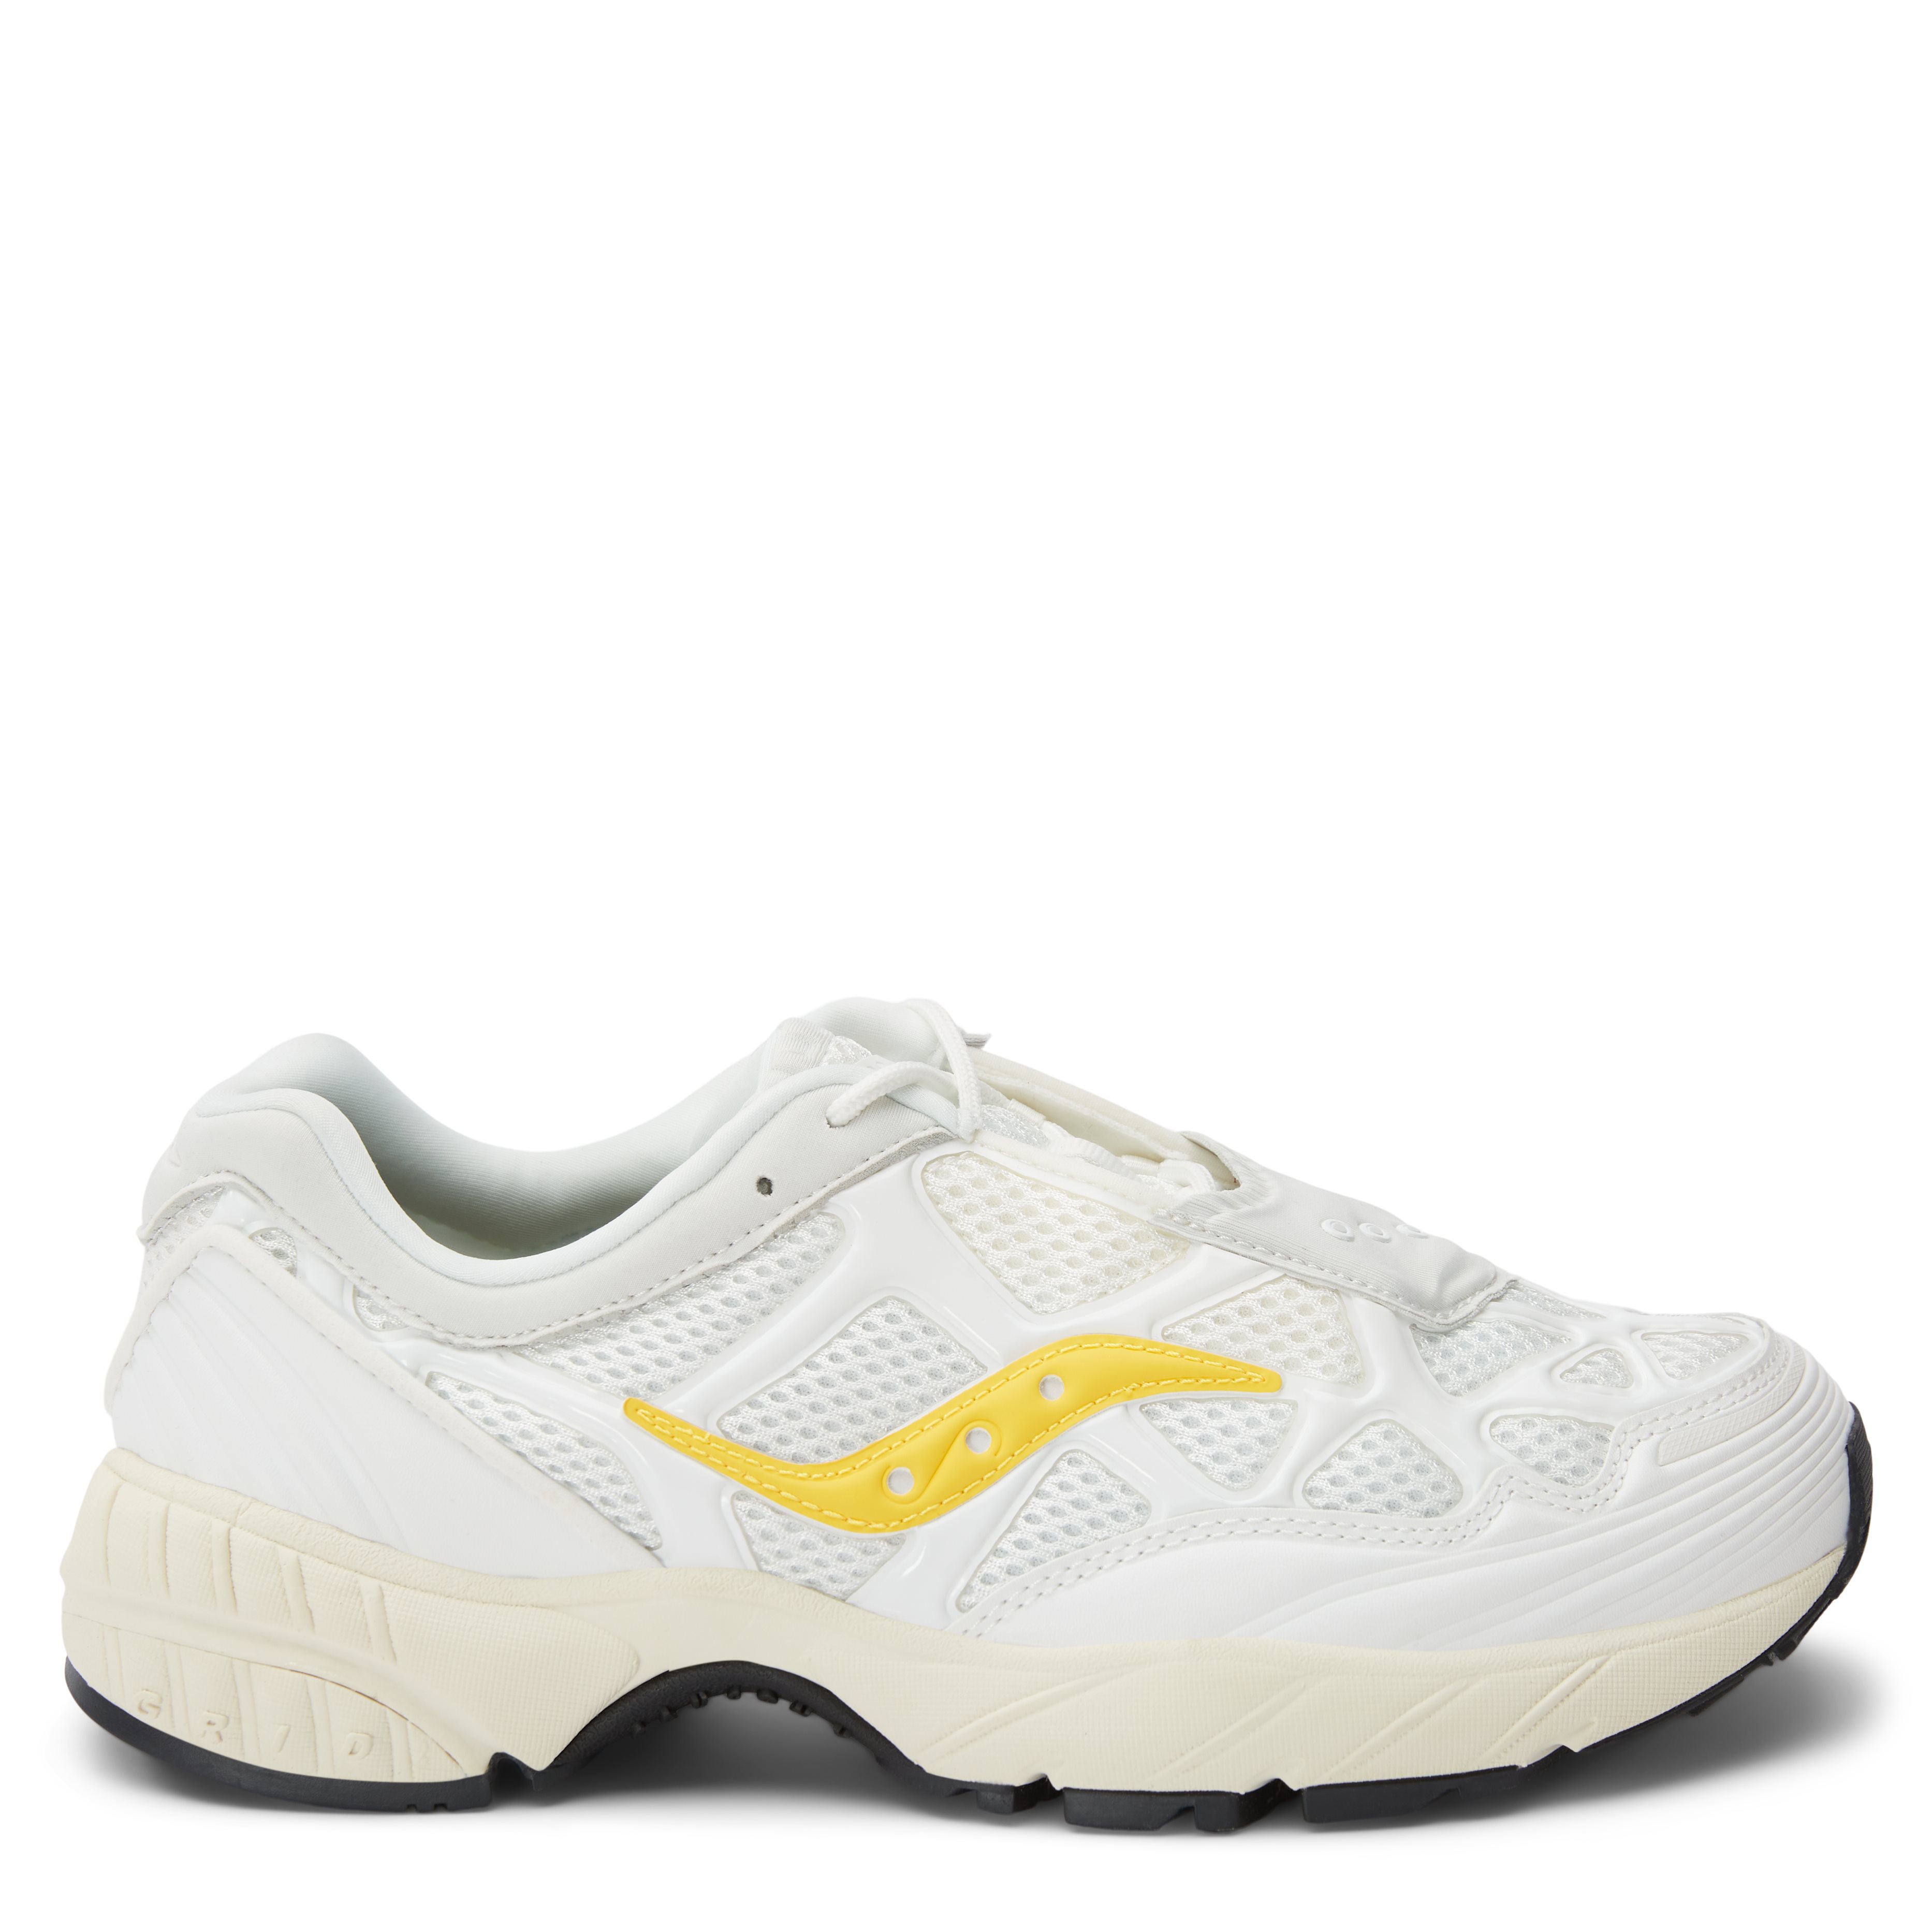 Saucony Shoes GRID WEB S70466-09 White